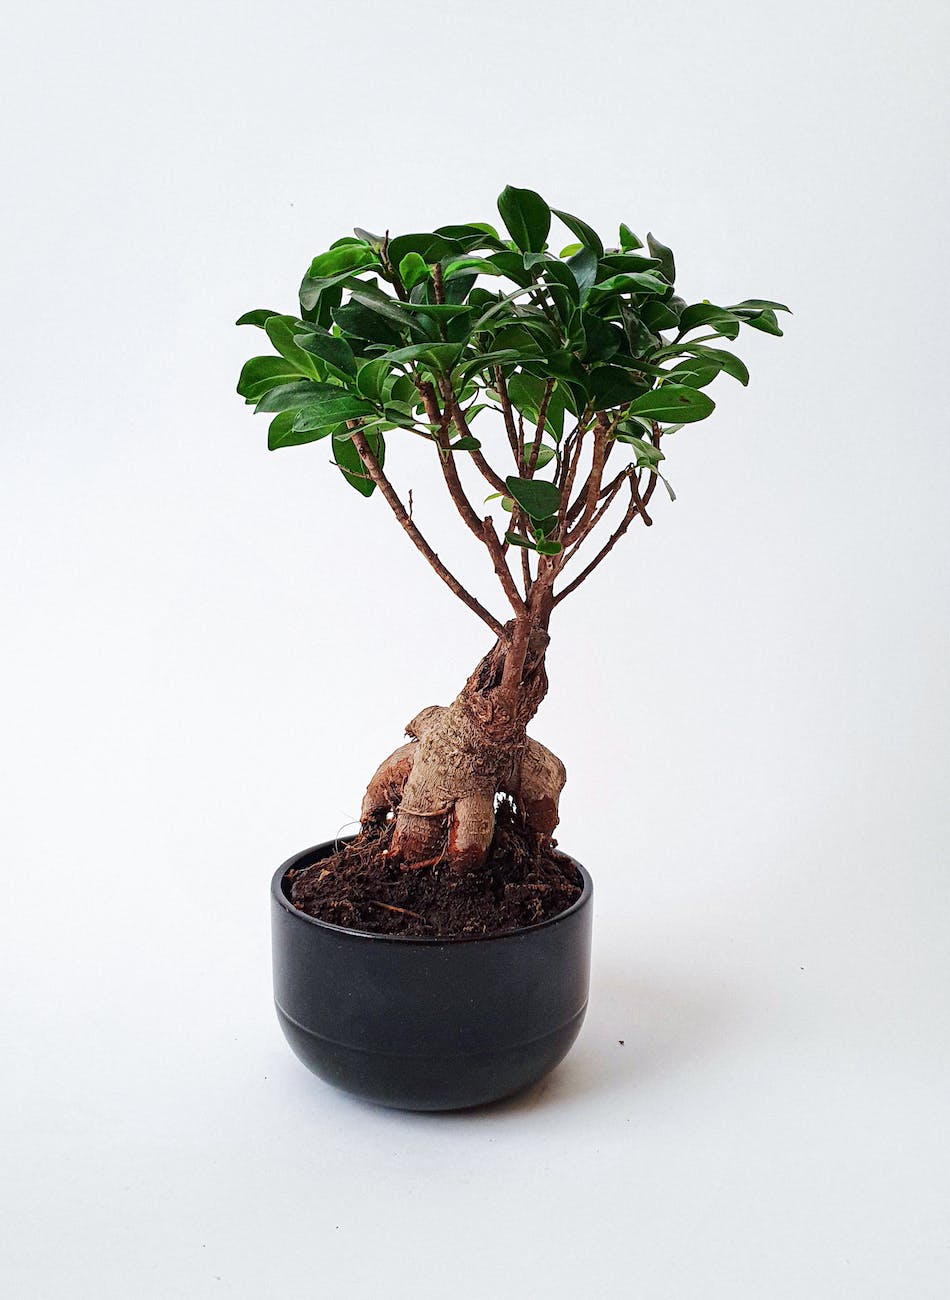 bonsai on white background